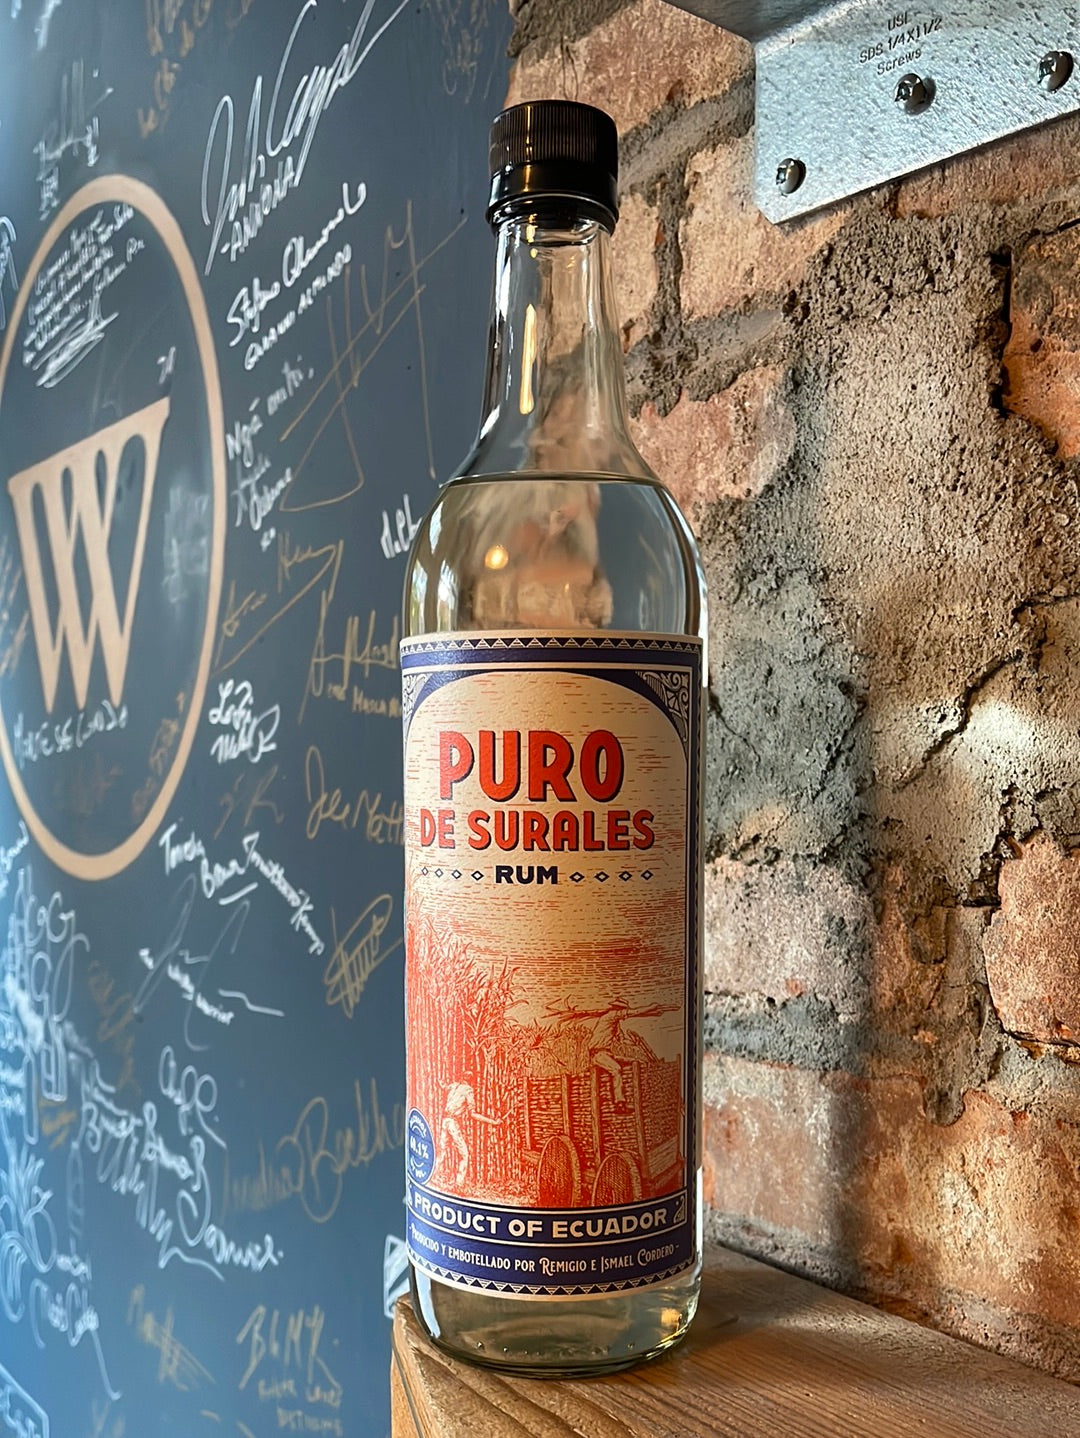 Cordero 'Puro de Surales' Rum Ecuador [NY STATE ONLY]